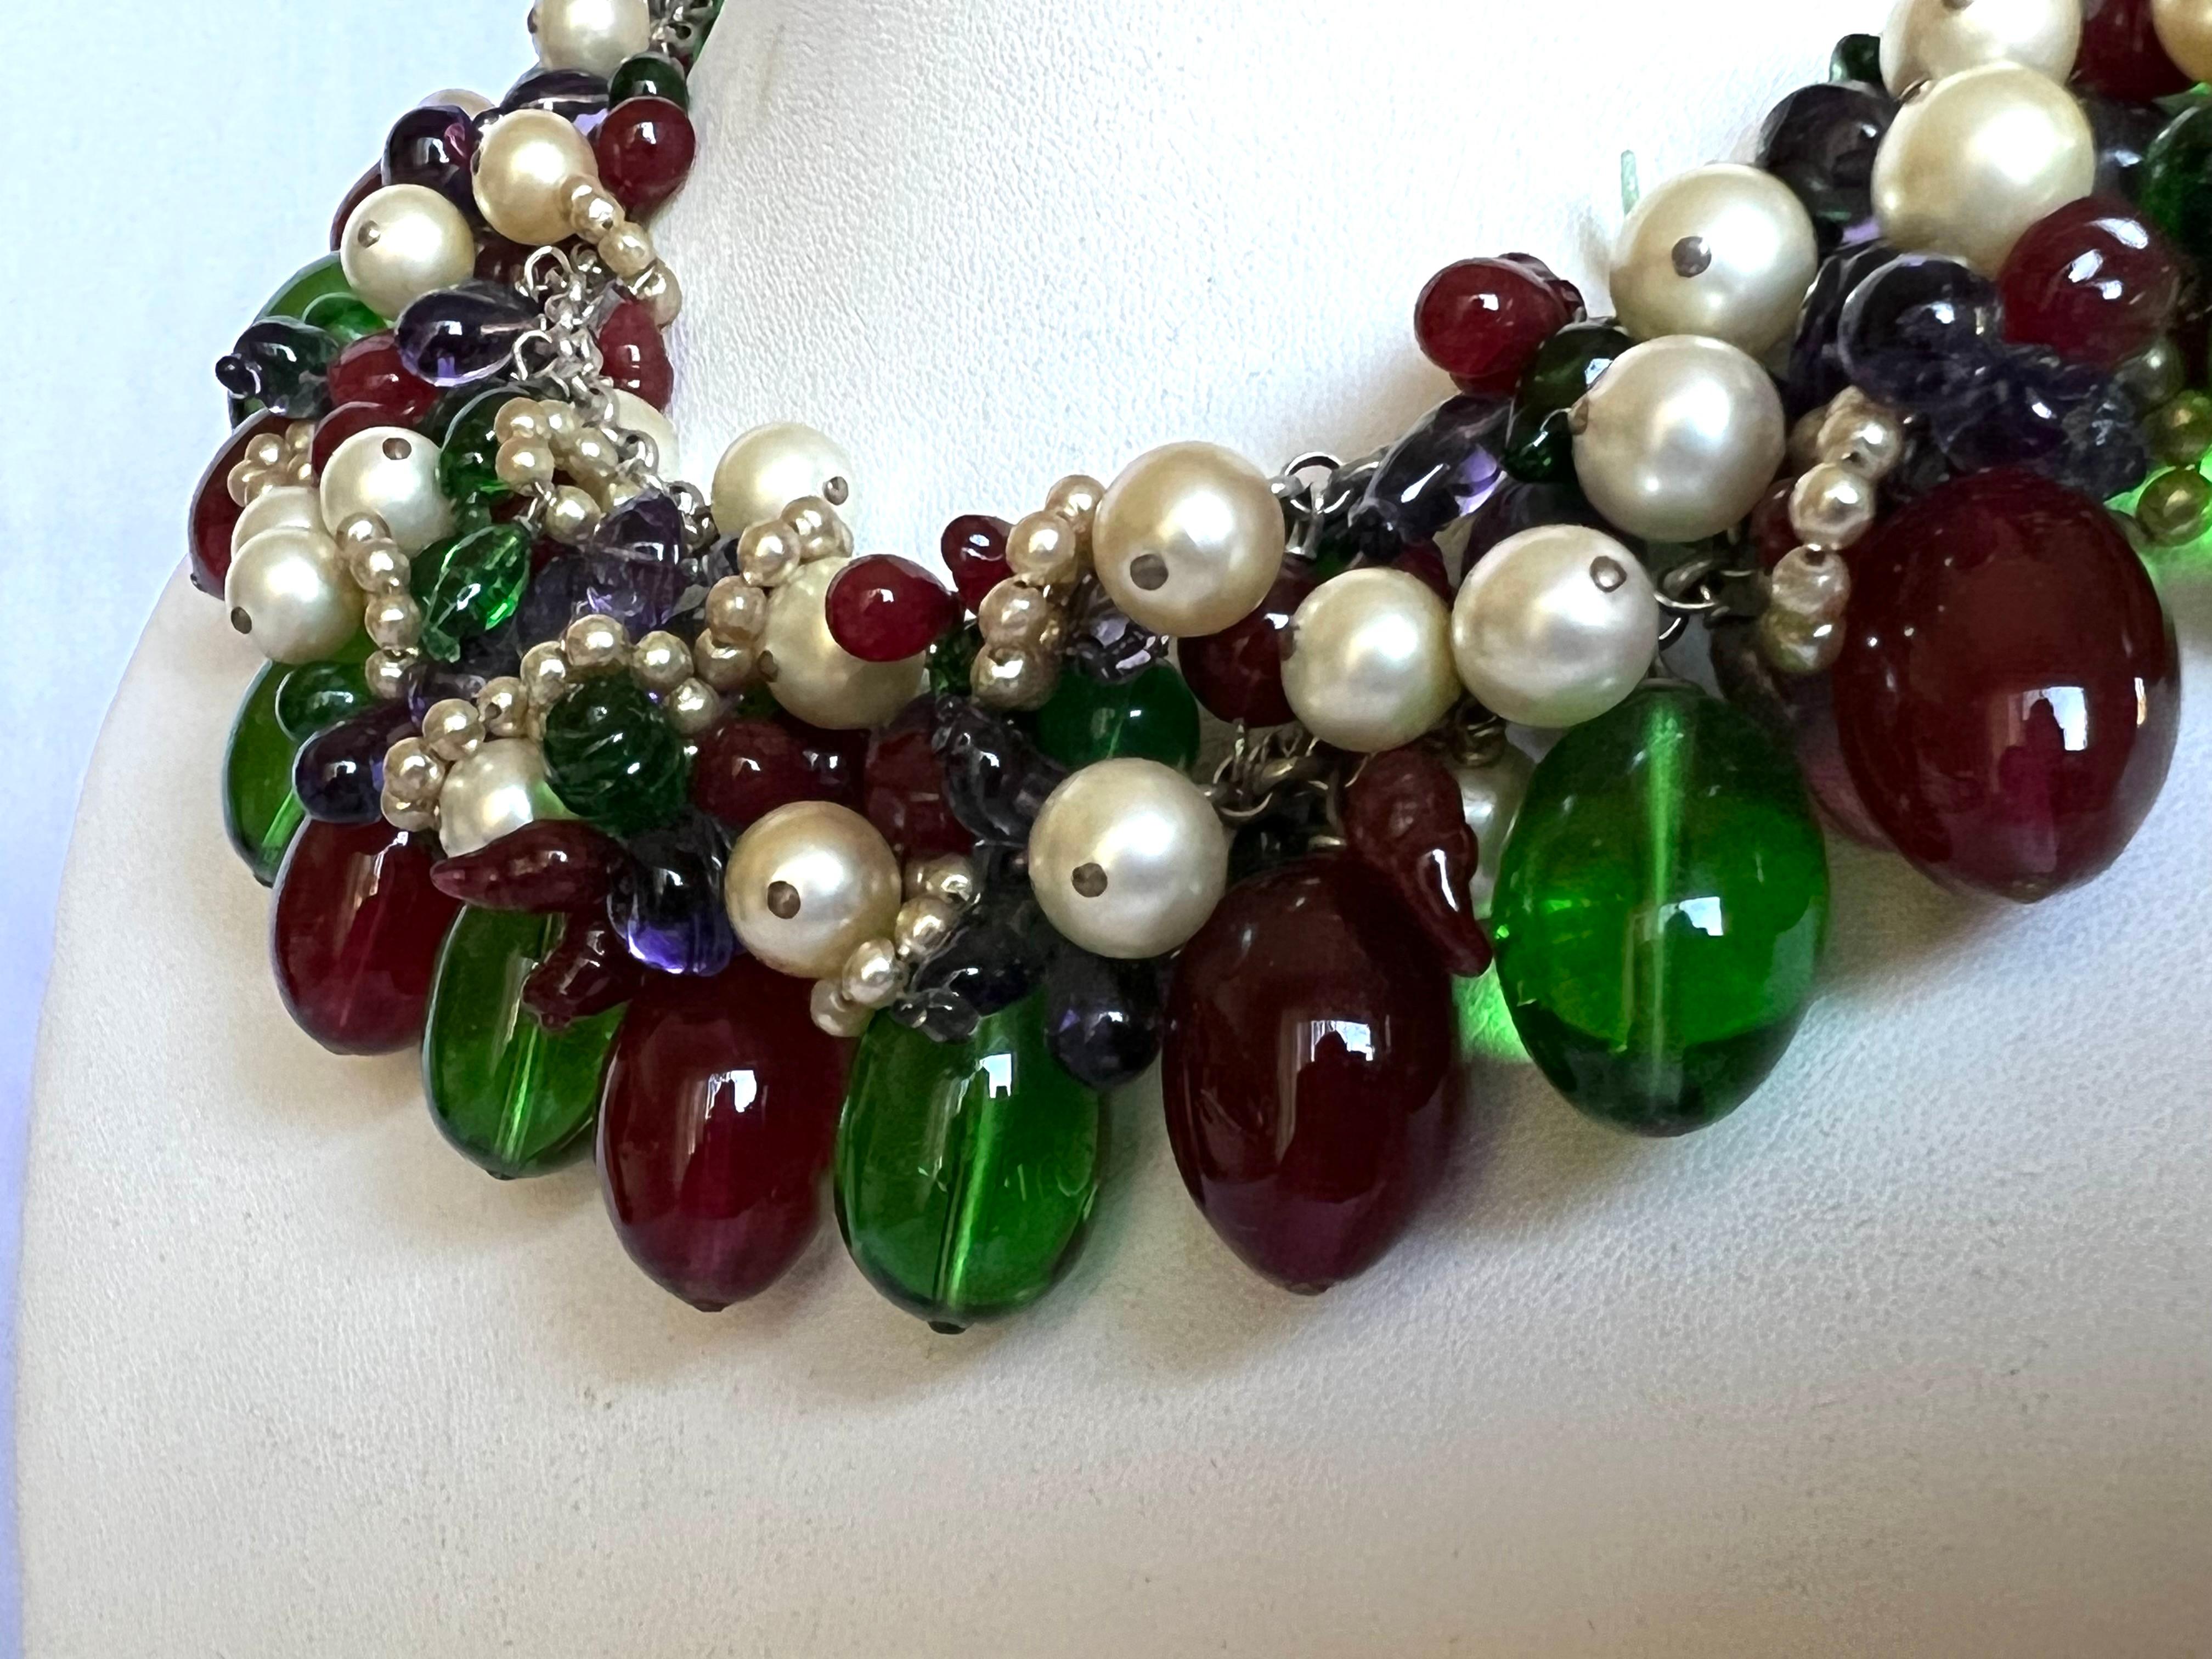 Scarce vintage Coco Chanel perles collier déclaration. Le collier est composé de grandes perles de verre bleues, vertes et rouges, accentuées par un mélange de fausses perles de verre. Le design de ce collier est un modèle classique des années 1930,